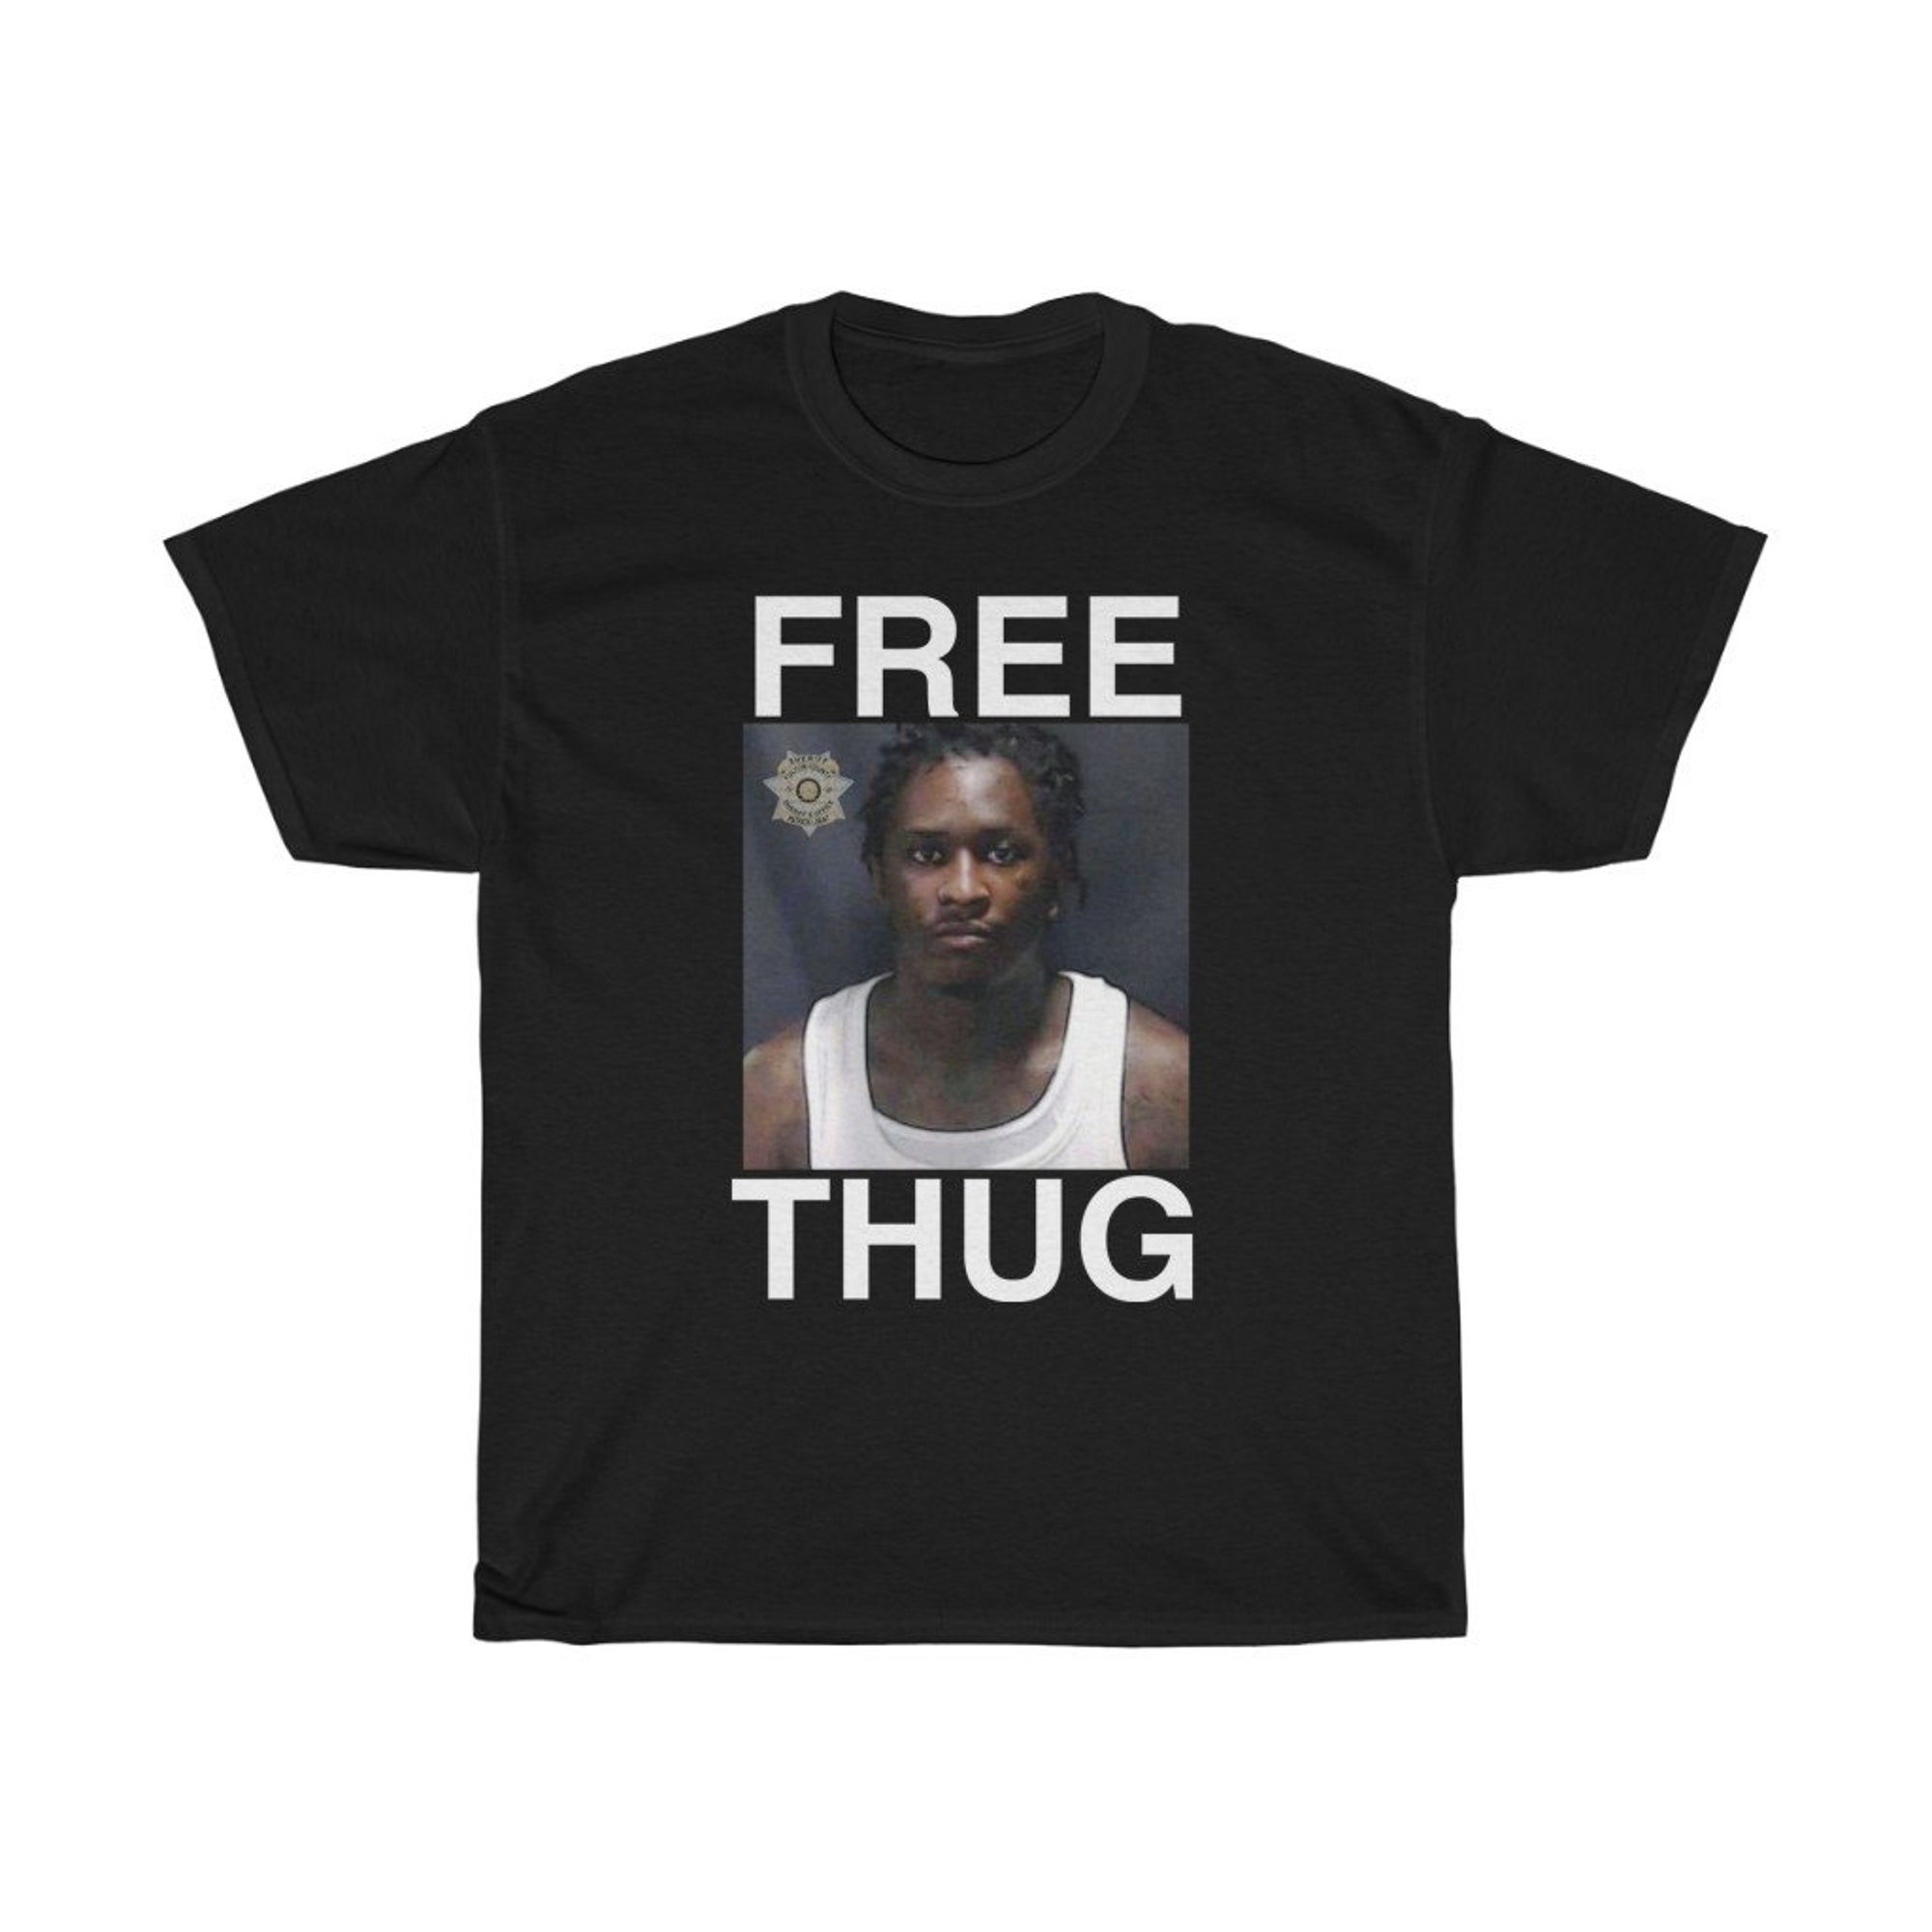 FREE THUG Young Thug T-Shirt